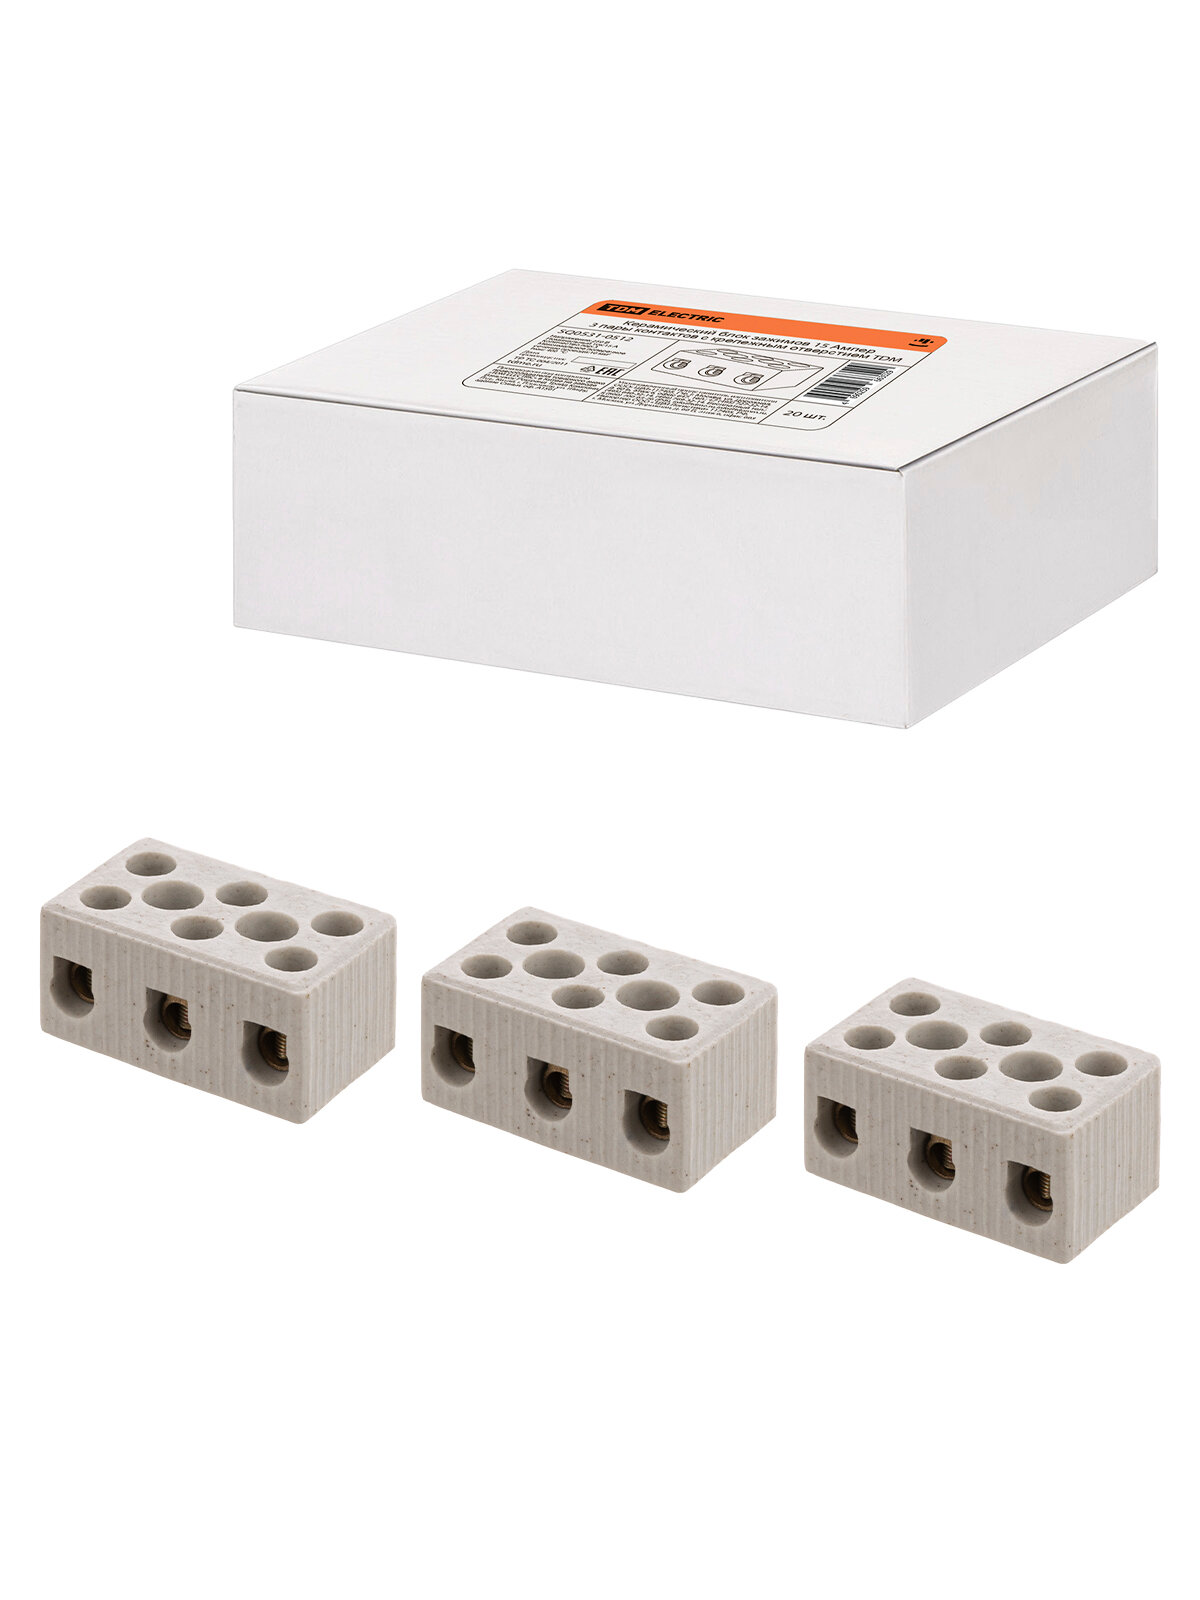 Керамический блок зажимов 15 Ампер 3 пары контактов с крепежным отверстием TDM SQ0531-0512, цена за 1 штуку